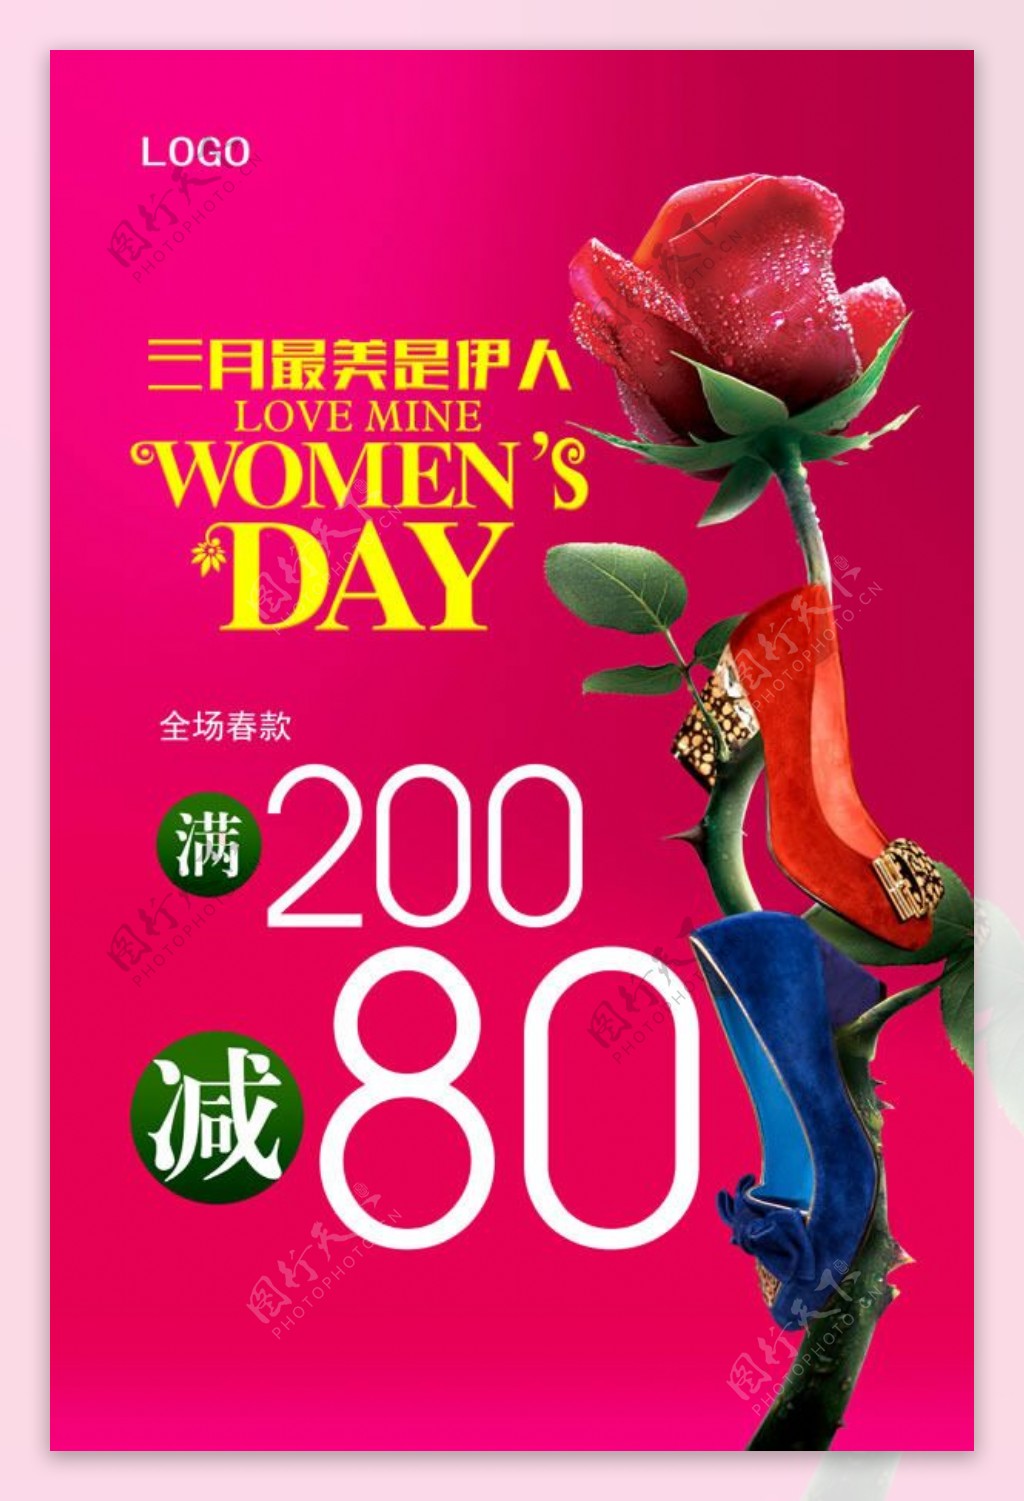 妇女节女鞋促销海报psd素材